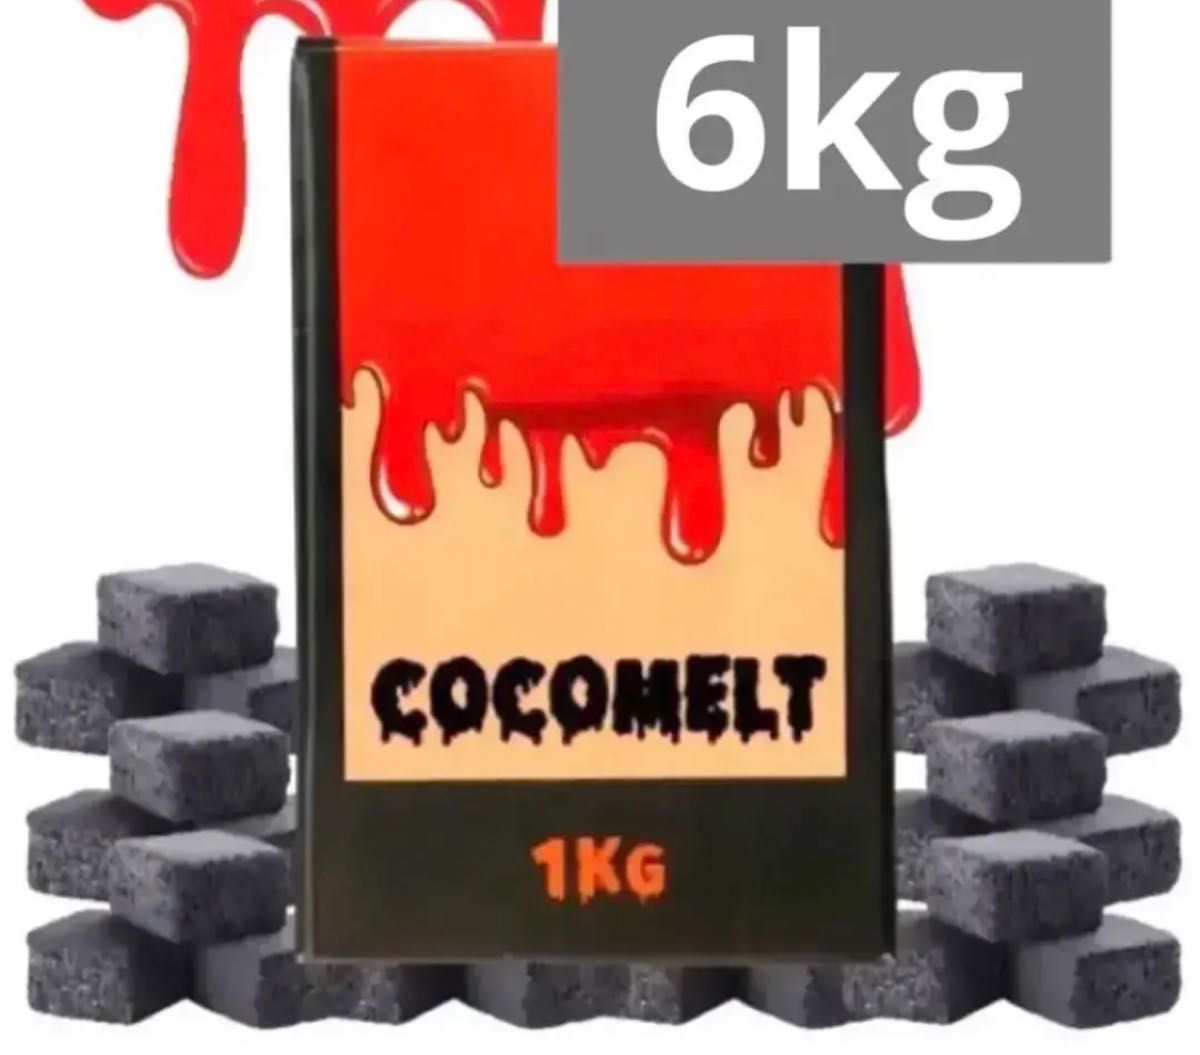 30個セット 30kg シーシャ 炭 Cocoblade ココナッツチャコール Yahoo